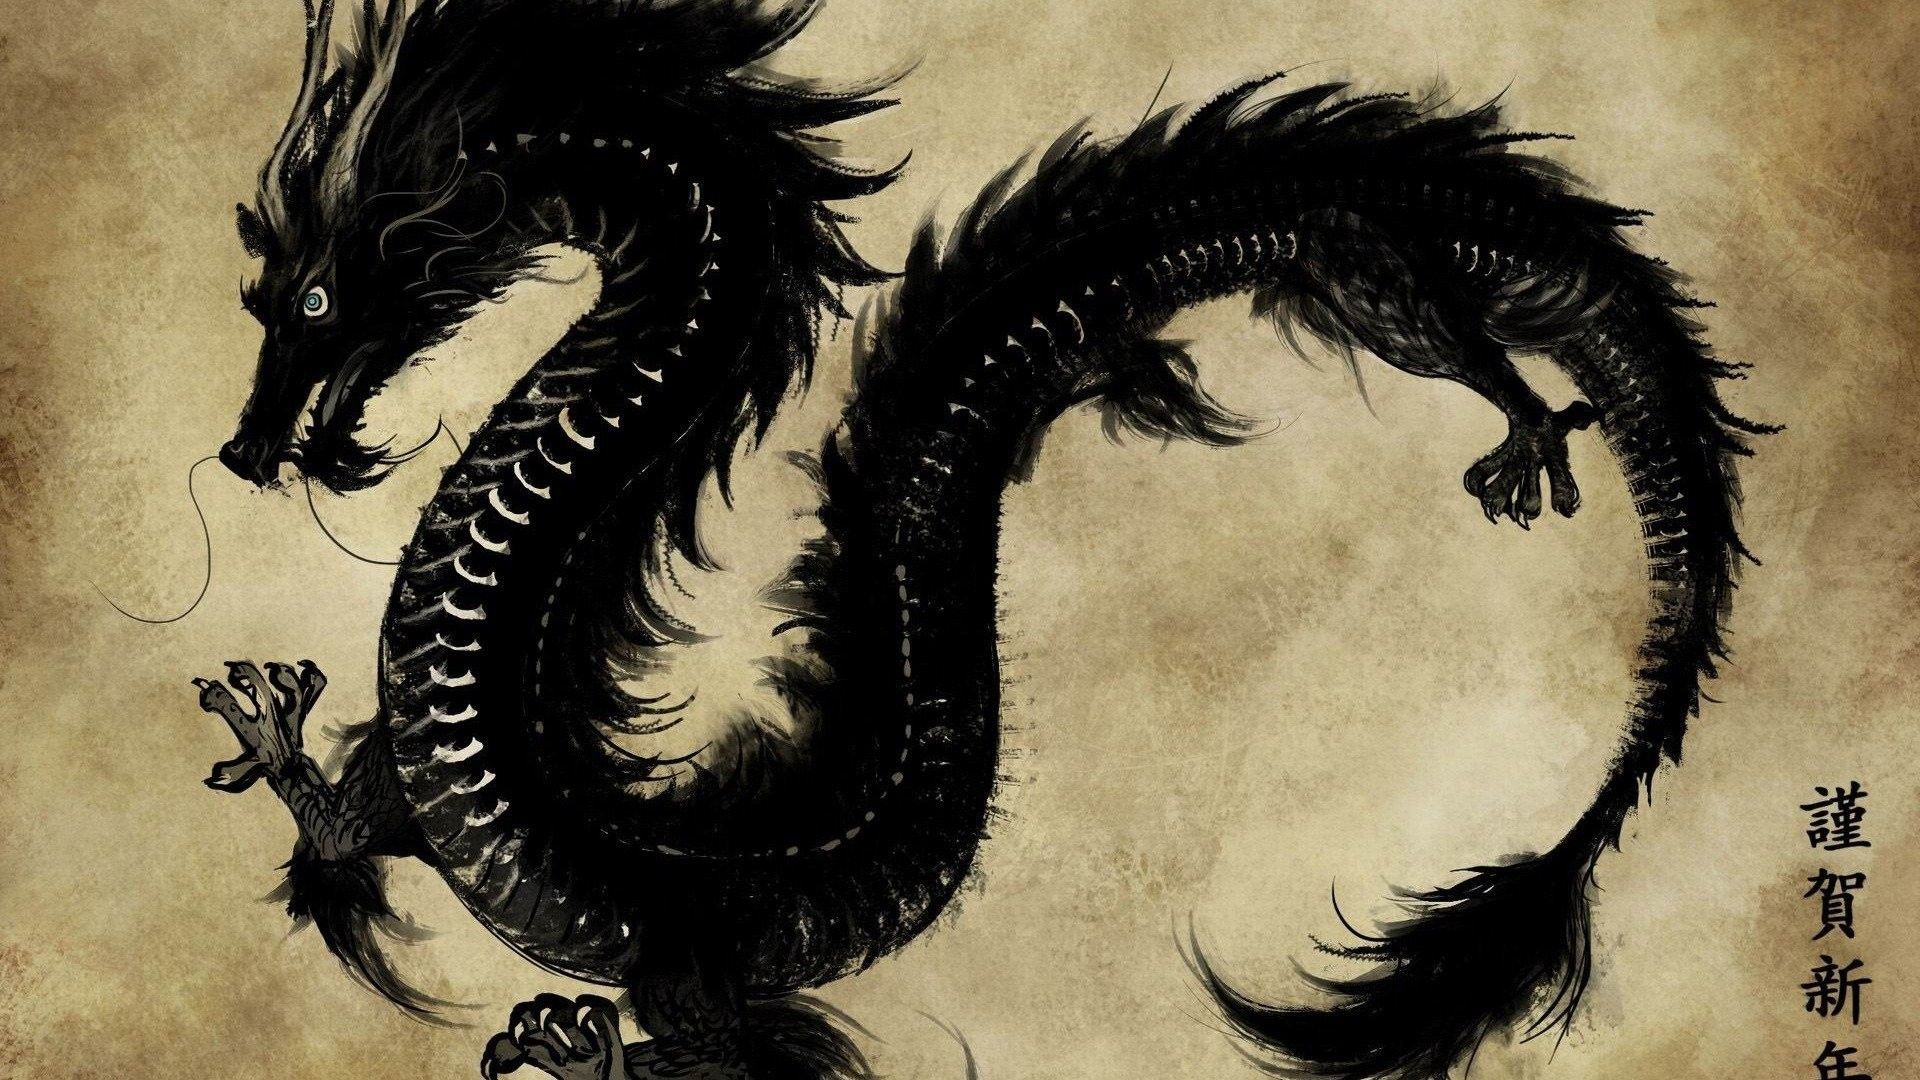 Chinese Dragon wallpaper - 1920x1080, #20040 - Dragon